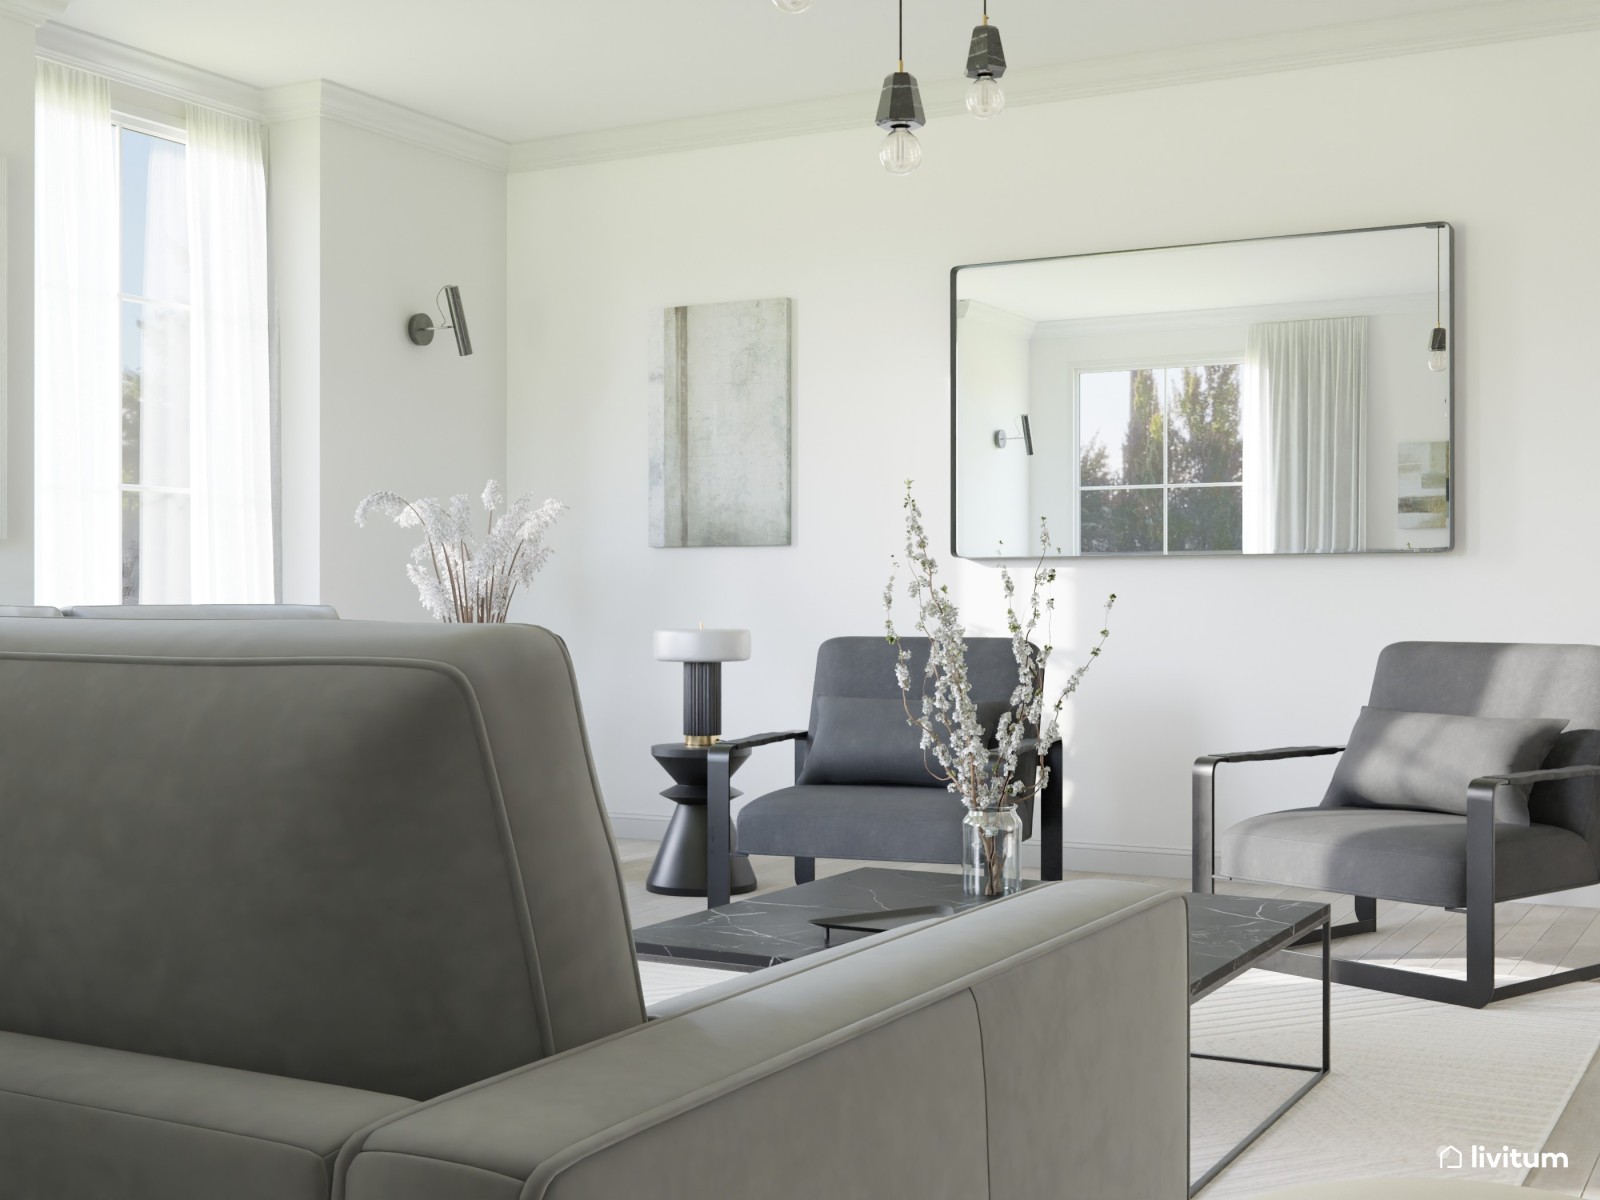 Gran salón moderno y sofisticado en gris 